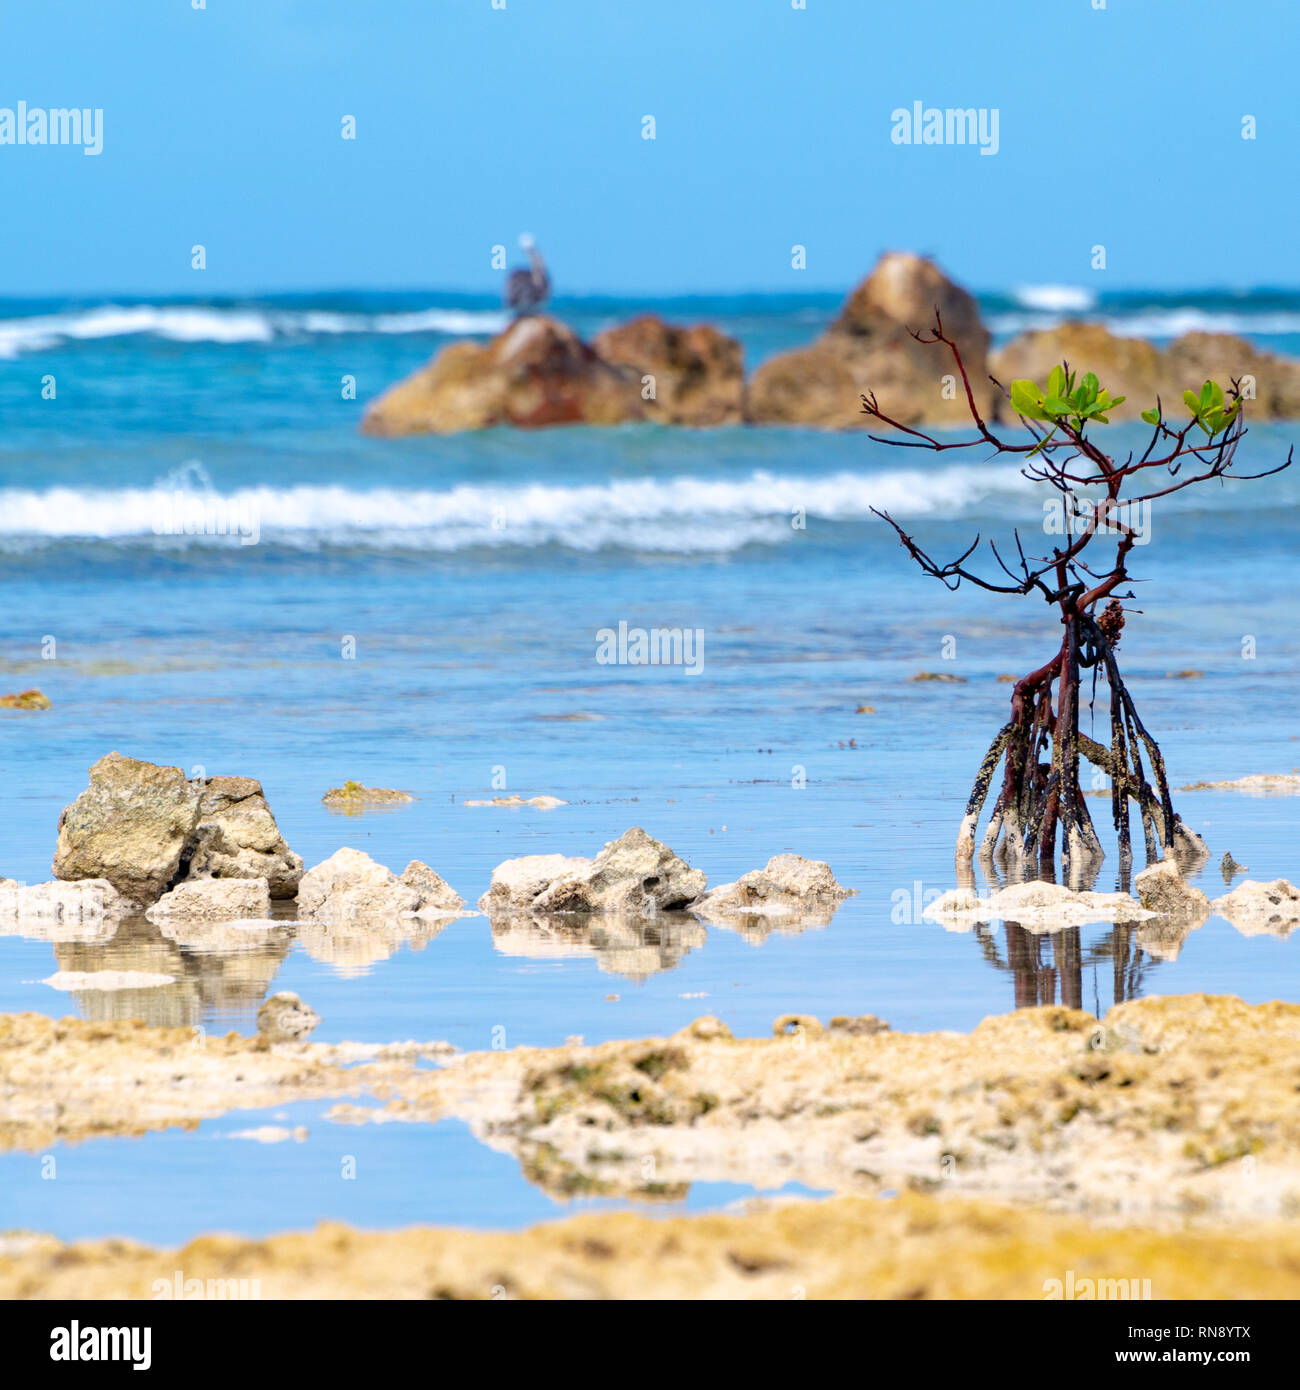 Mangrovie (Rhizophora mangle) albero che cresce al di sopra della superficie dell'acqua vicino al litorale, con radici esposte, sulla costa di isola tropicale. Foto Stock